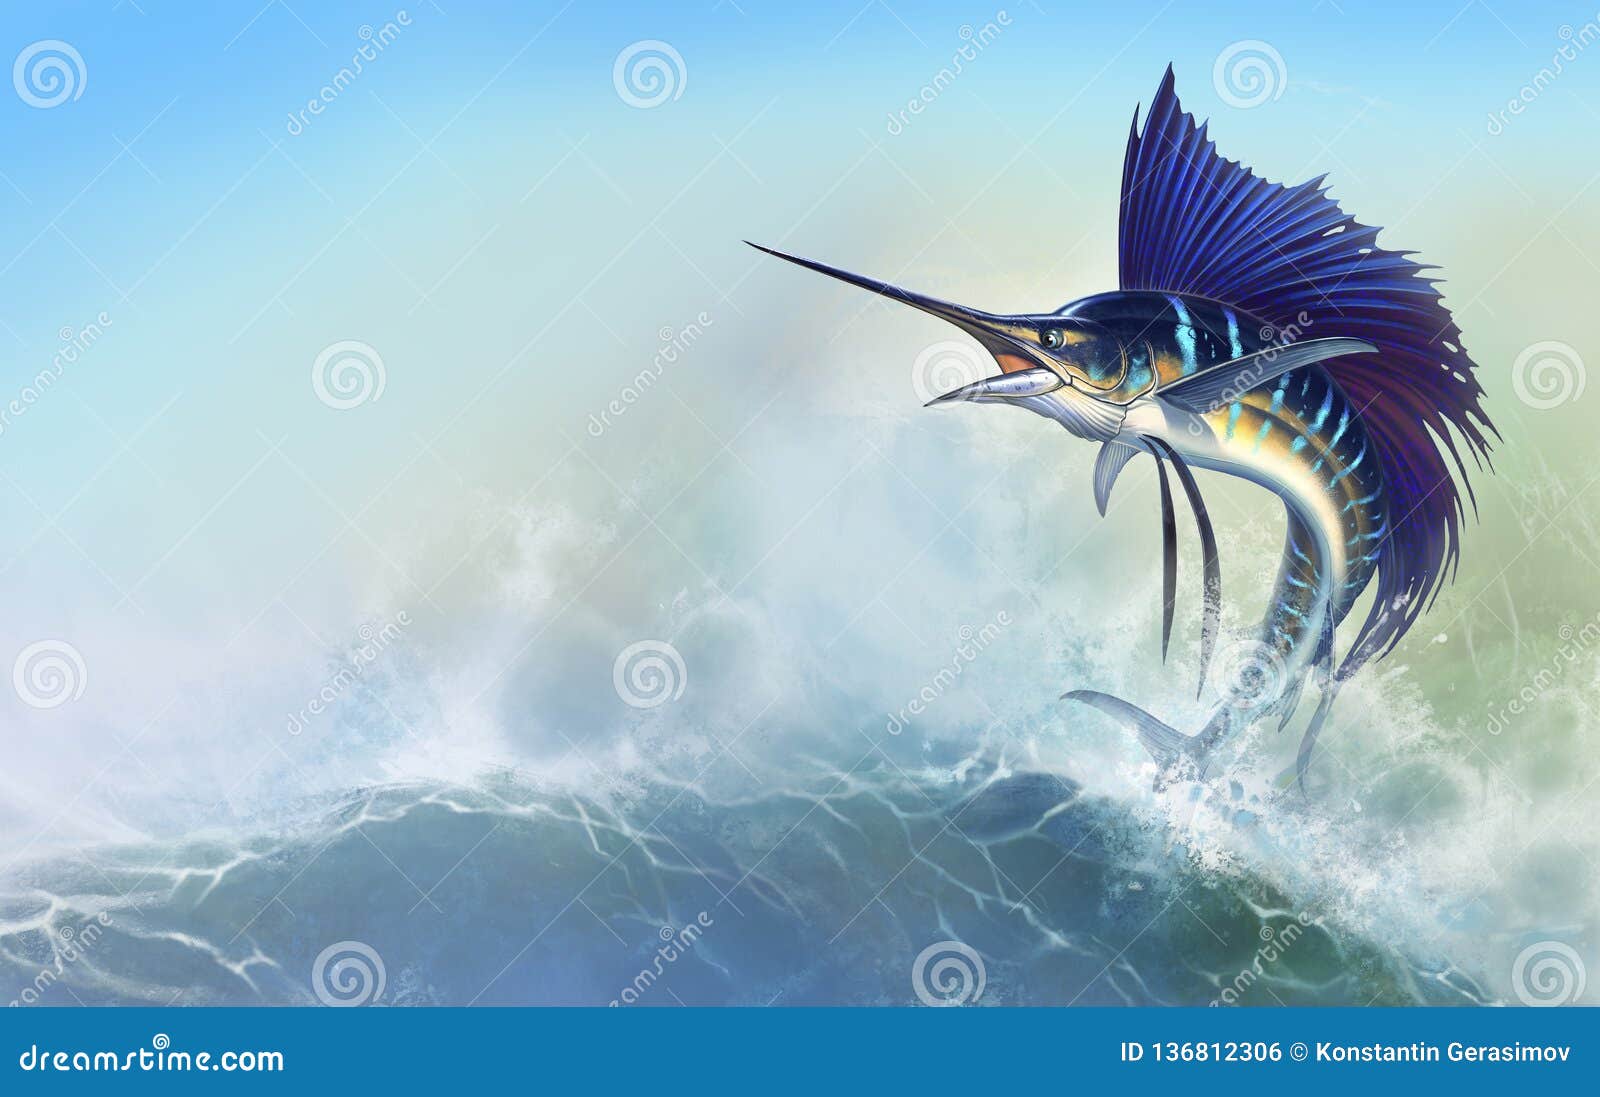 Sailfish Fish Stock Illustrations – 1,976 Sailfish Fish Stock